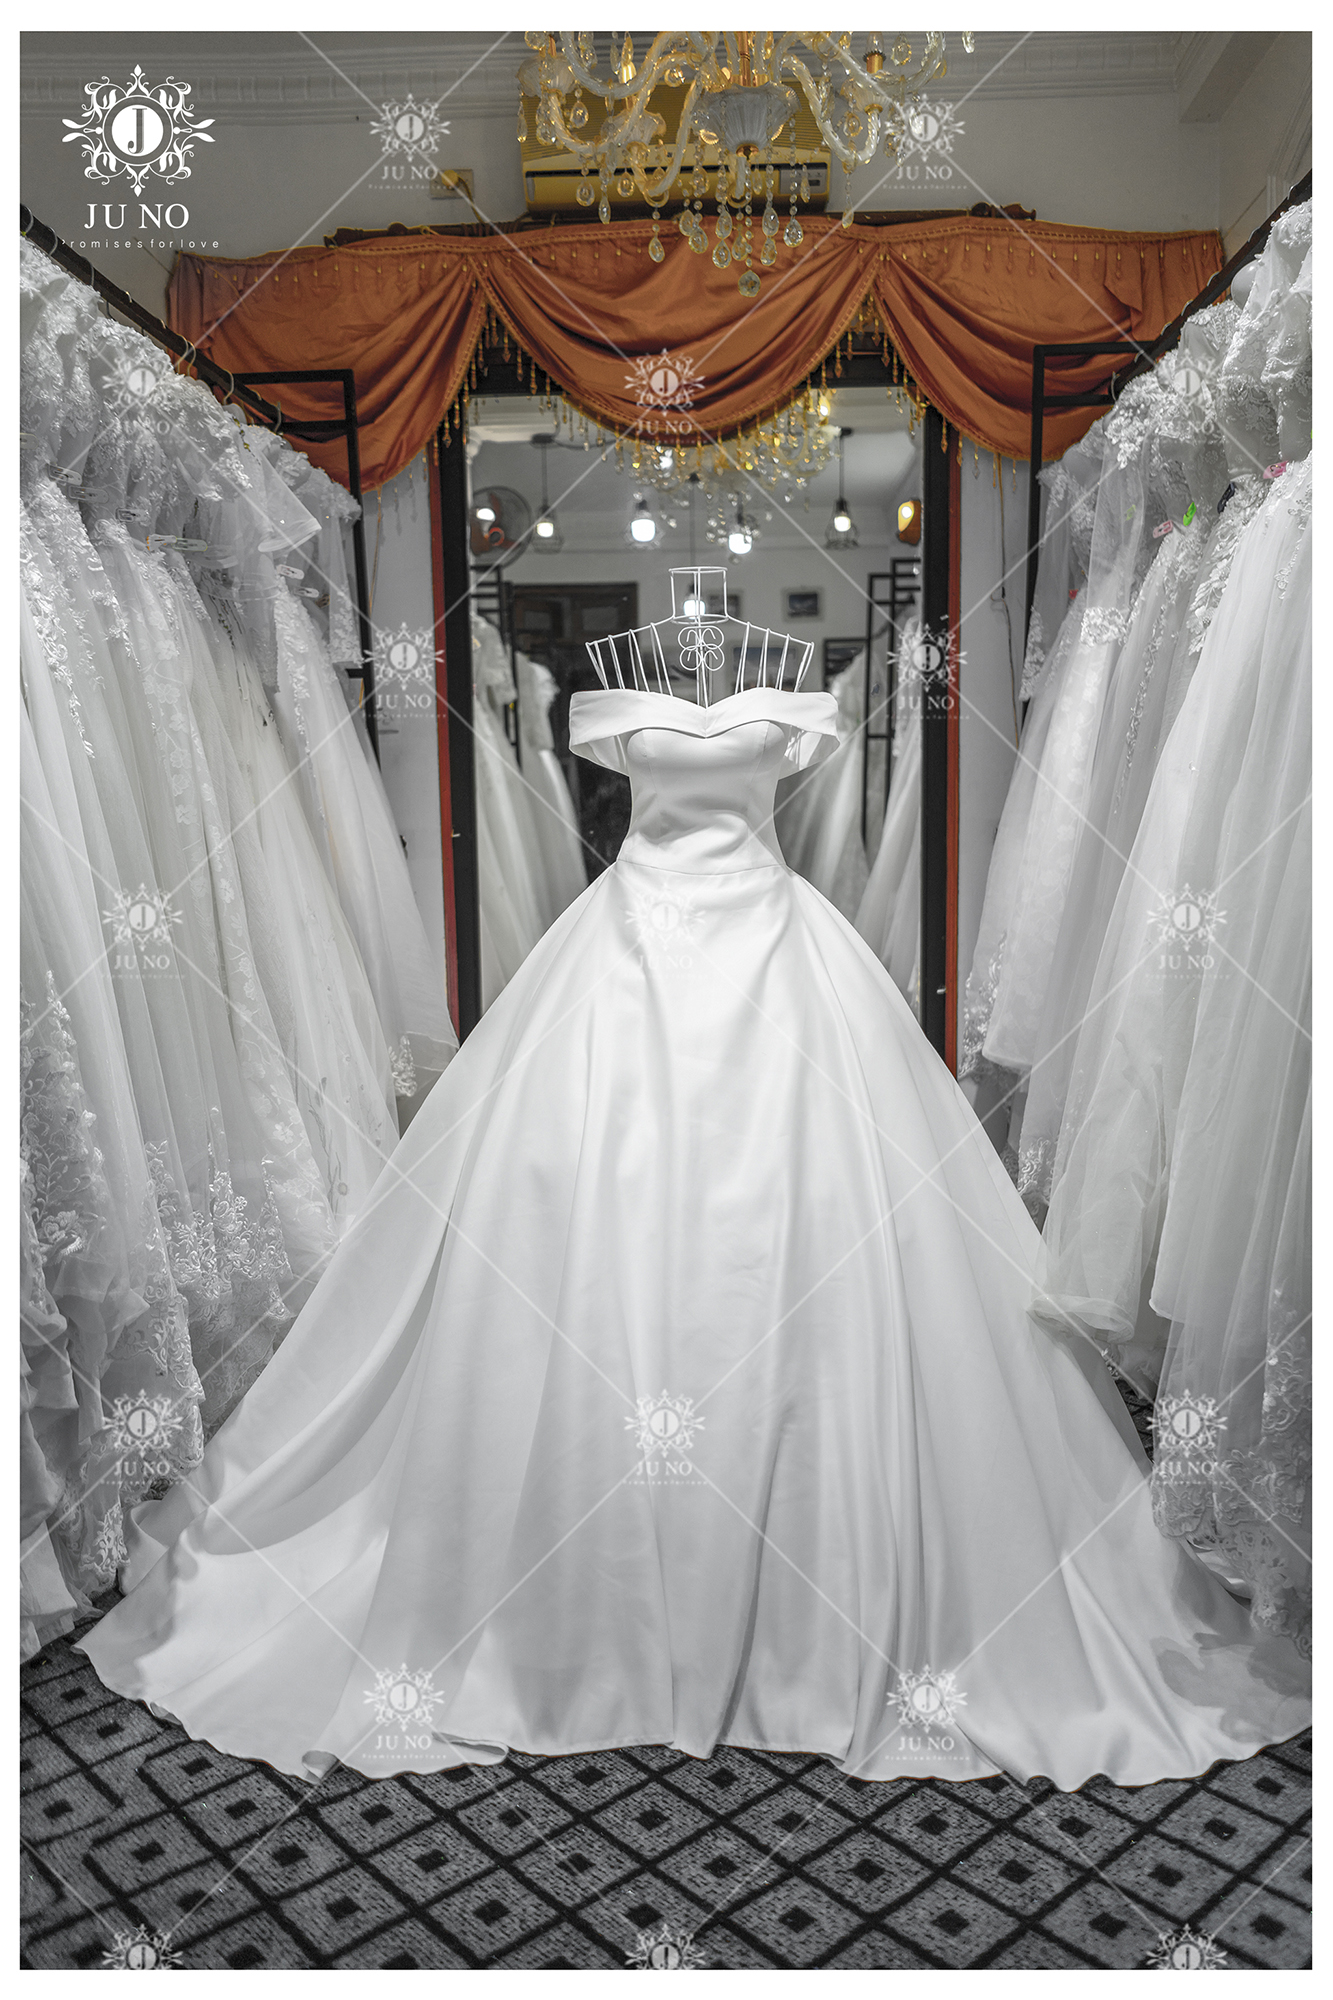 Váy cưới - Top 5 mẫu váy cưới, áo cưới đẹp hiện nay là gì?